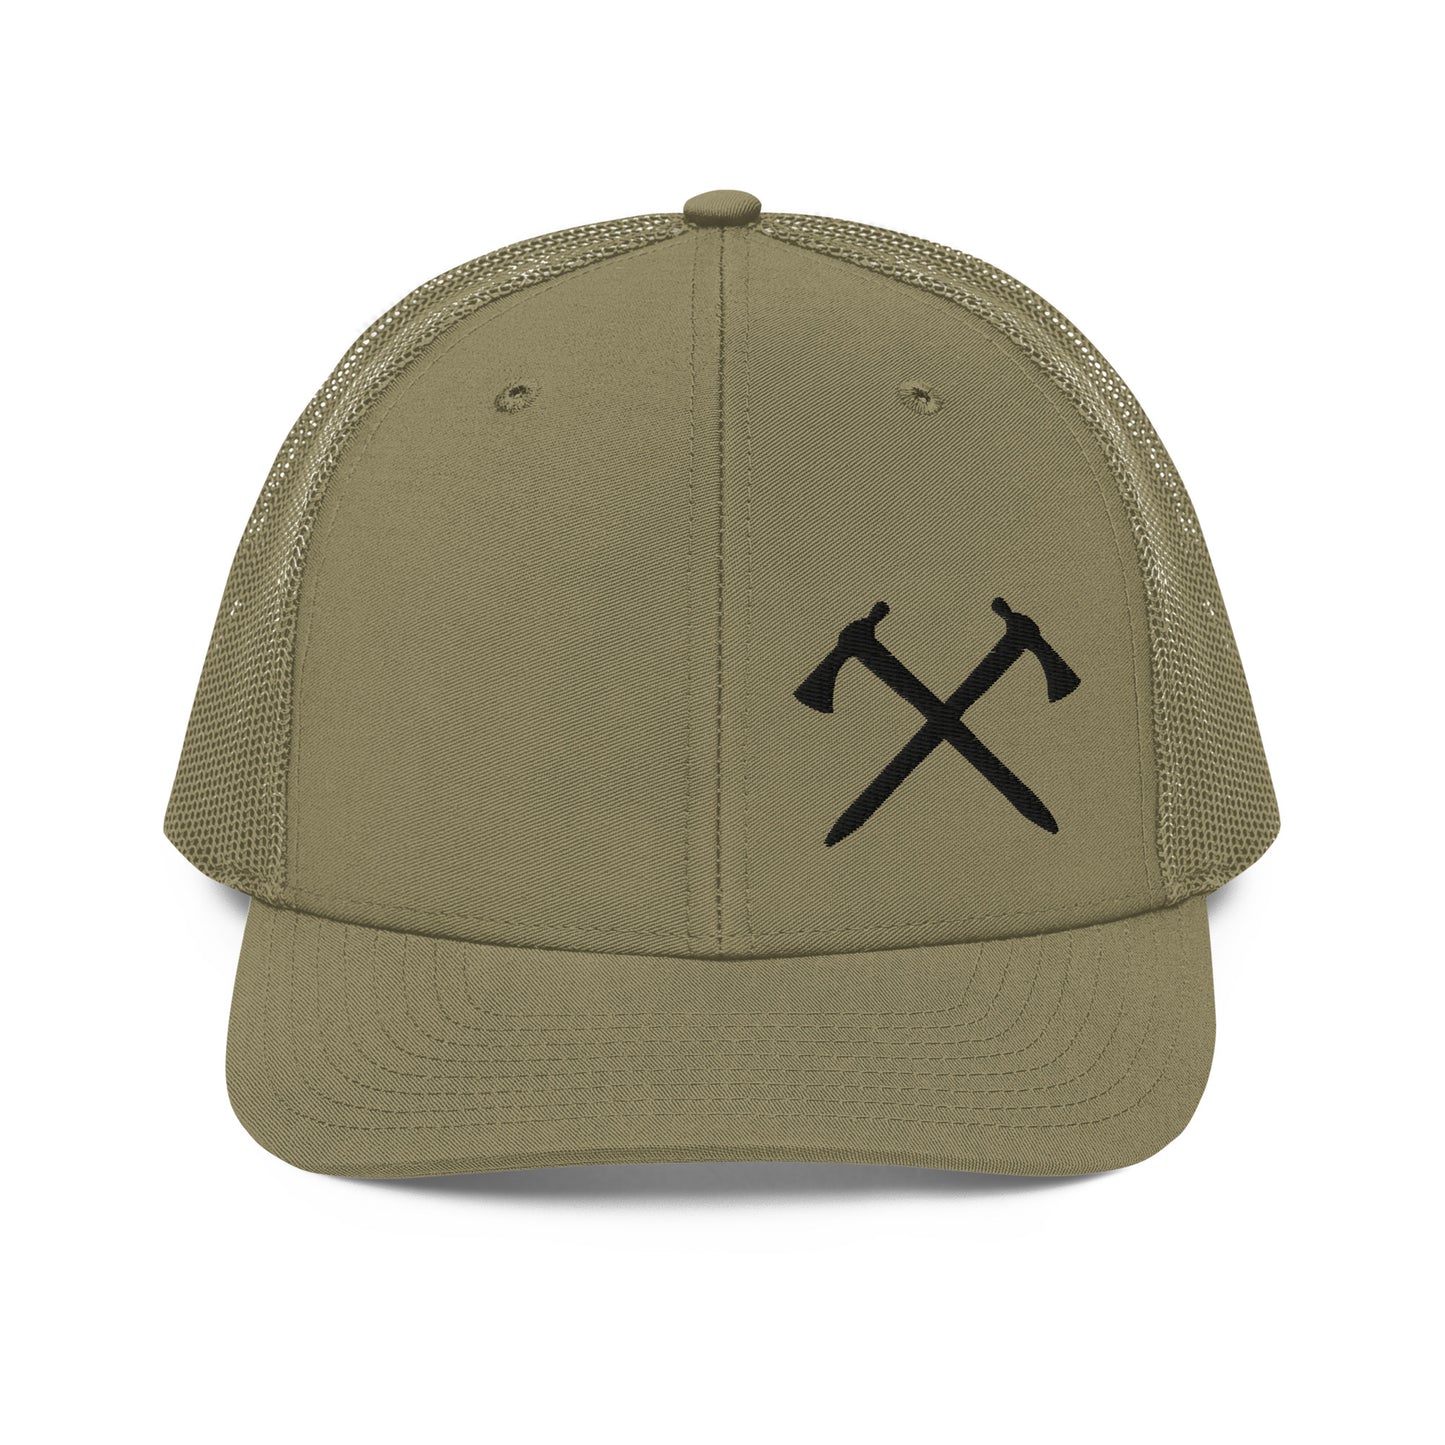 Pipehawks trucker cap